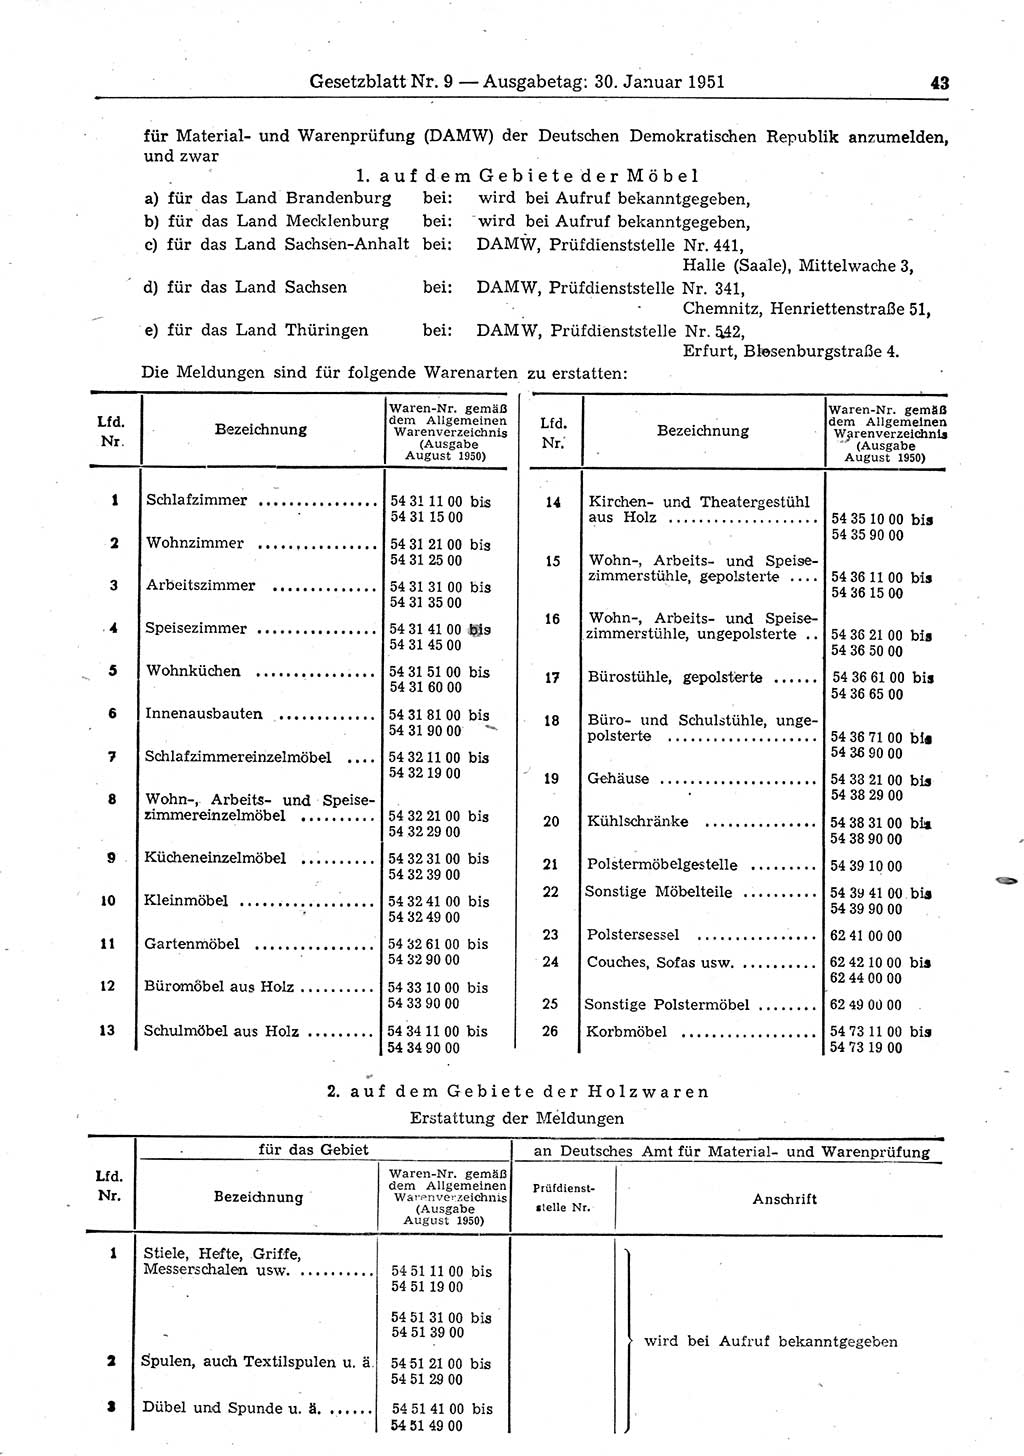 Gesetzblatt (GBl.) der Deutschen Demokratischen Republik (DDR) 1951, Seite 43 (GBl. DDR 1951, S. 43)